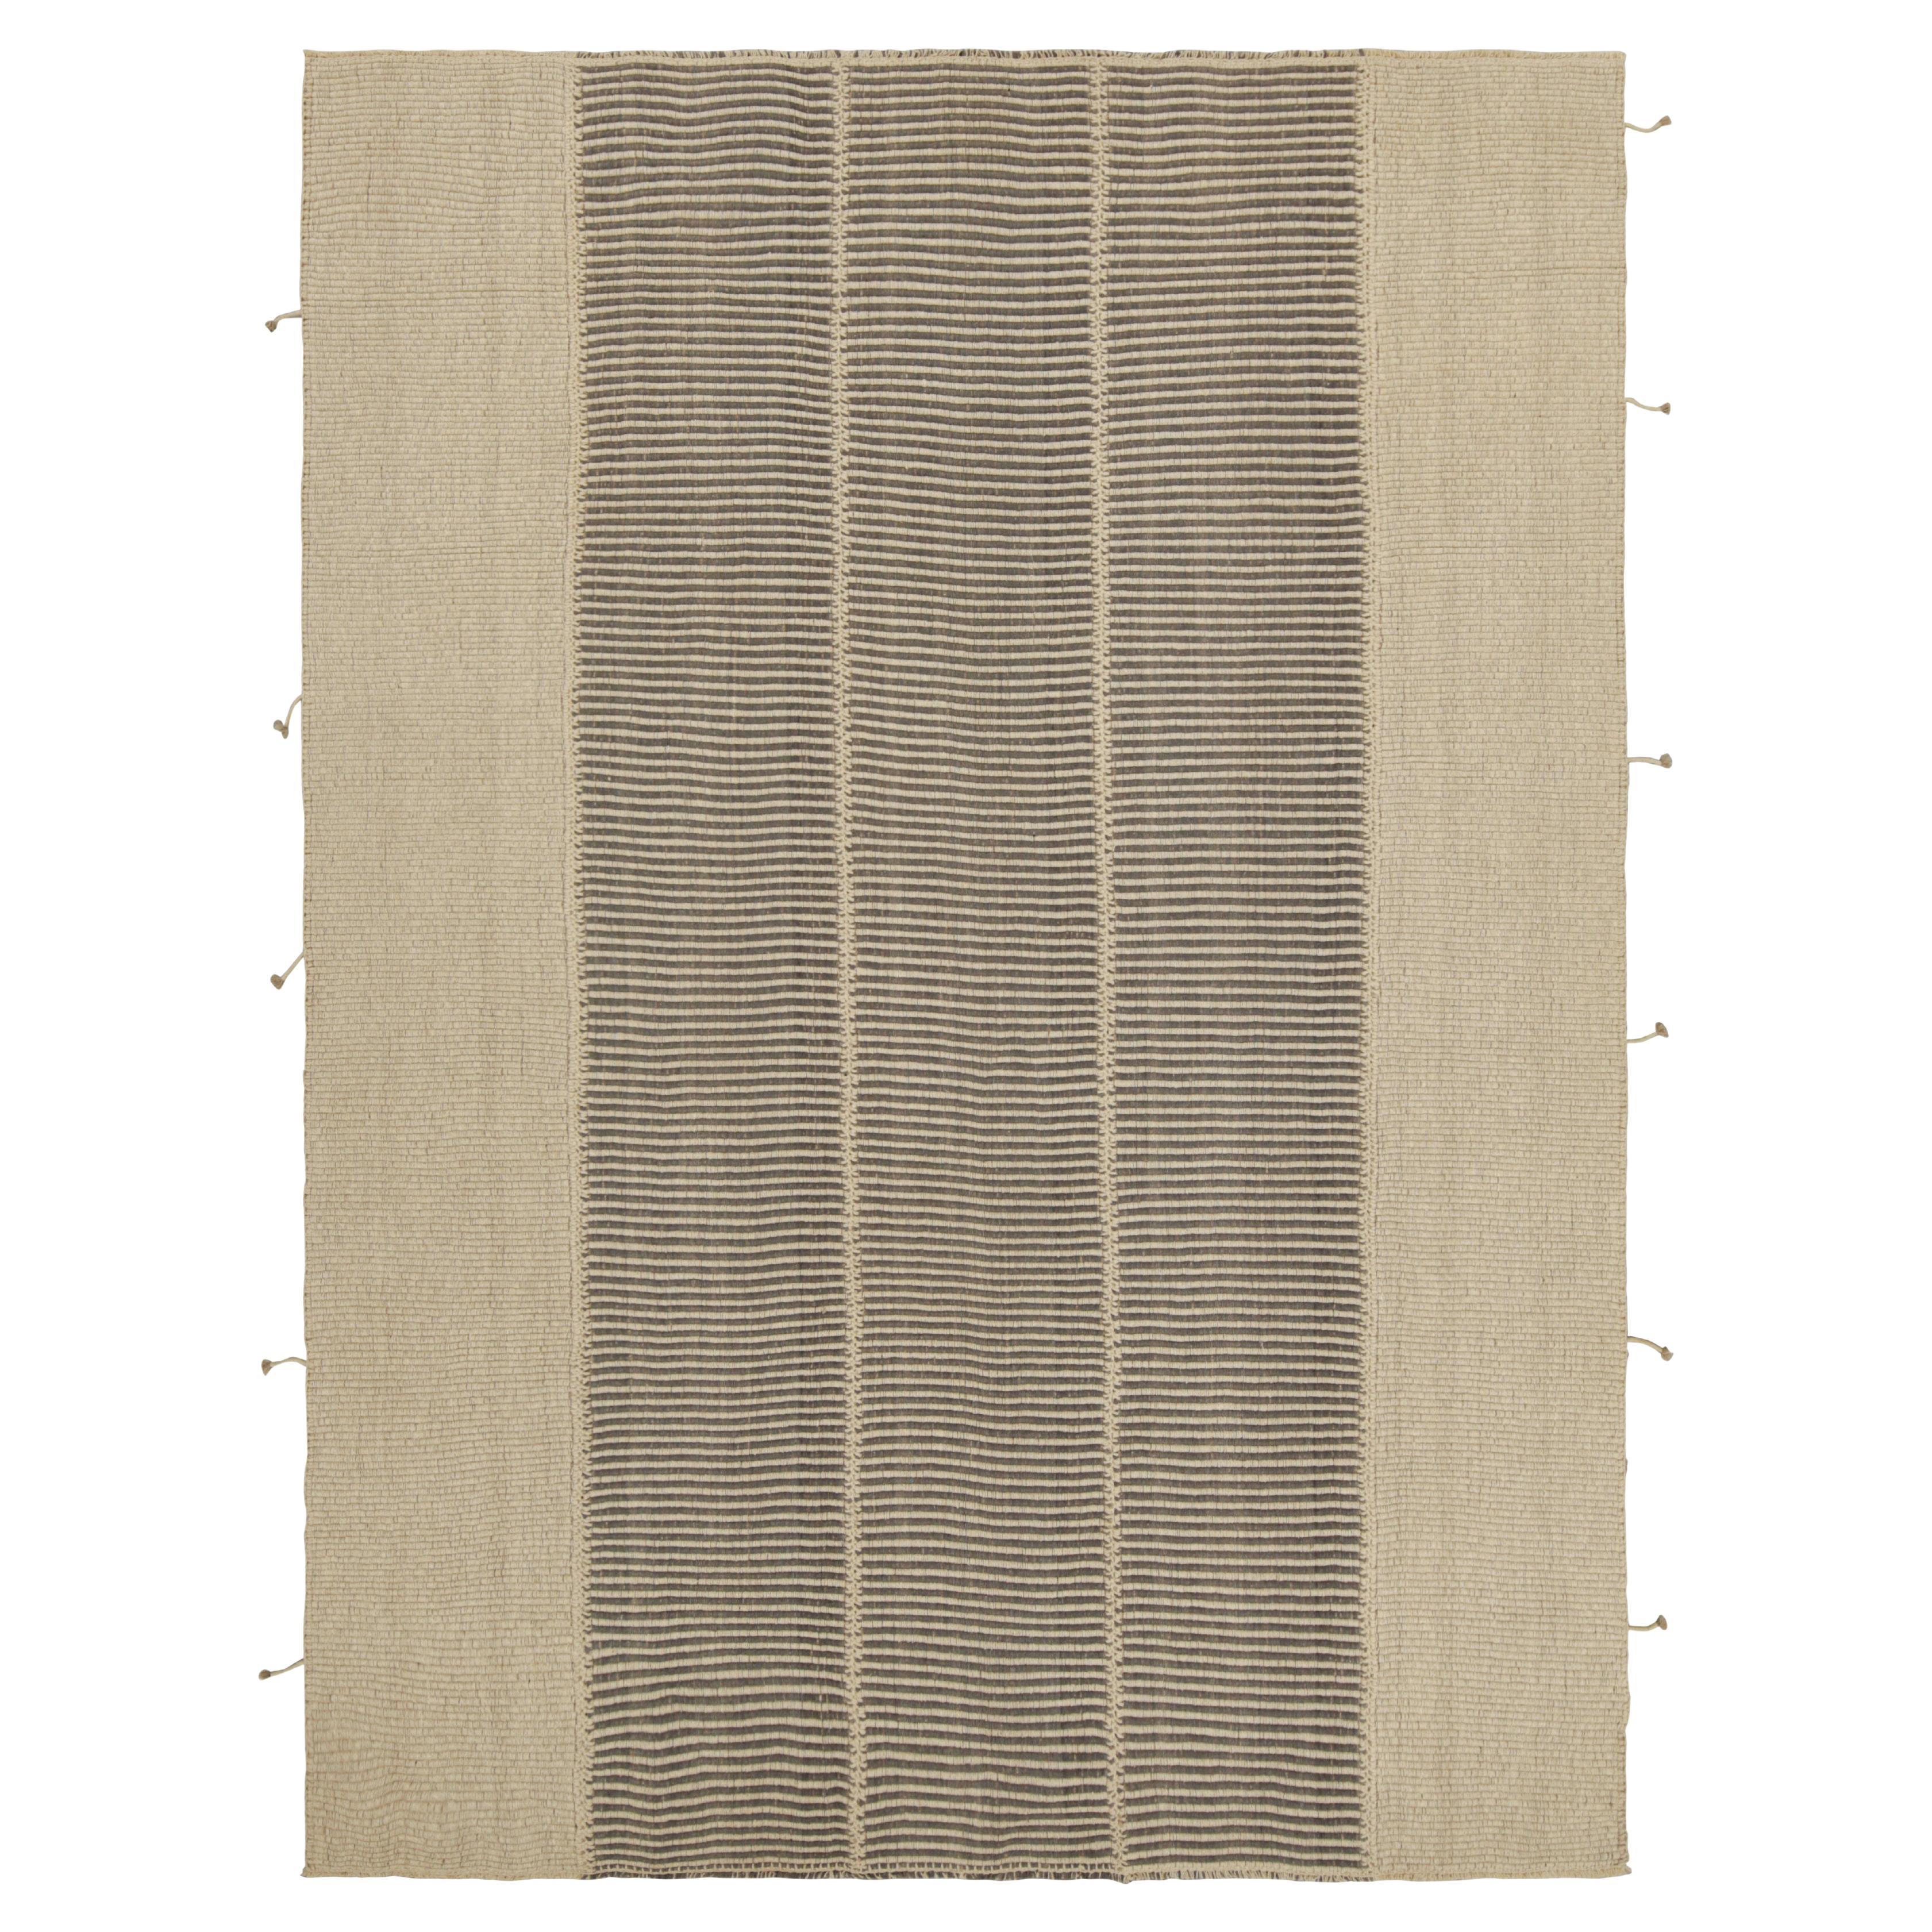 Rug & Kilim's Contemporary Kilim in Beige and Black Textural Stripes (Kilim contemporain à rayures texturées beiges et noires)